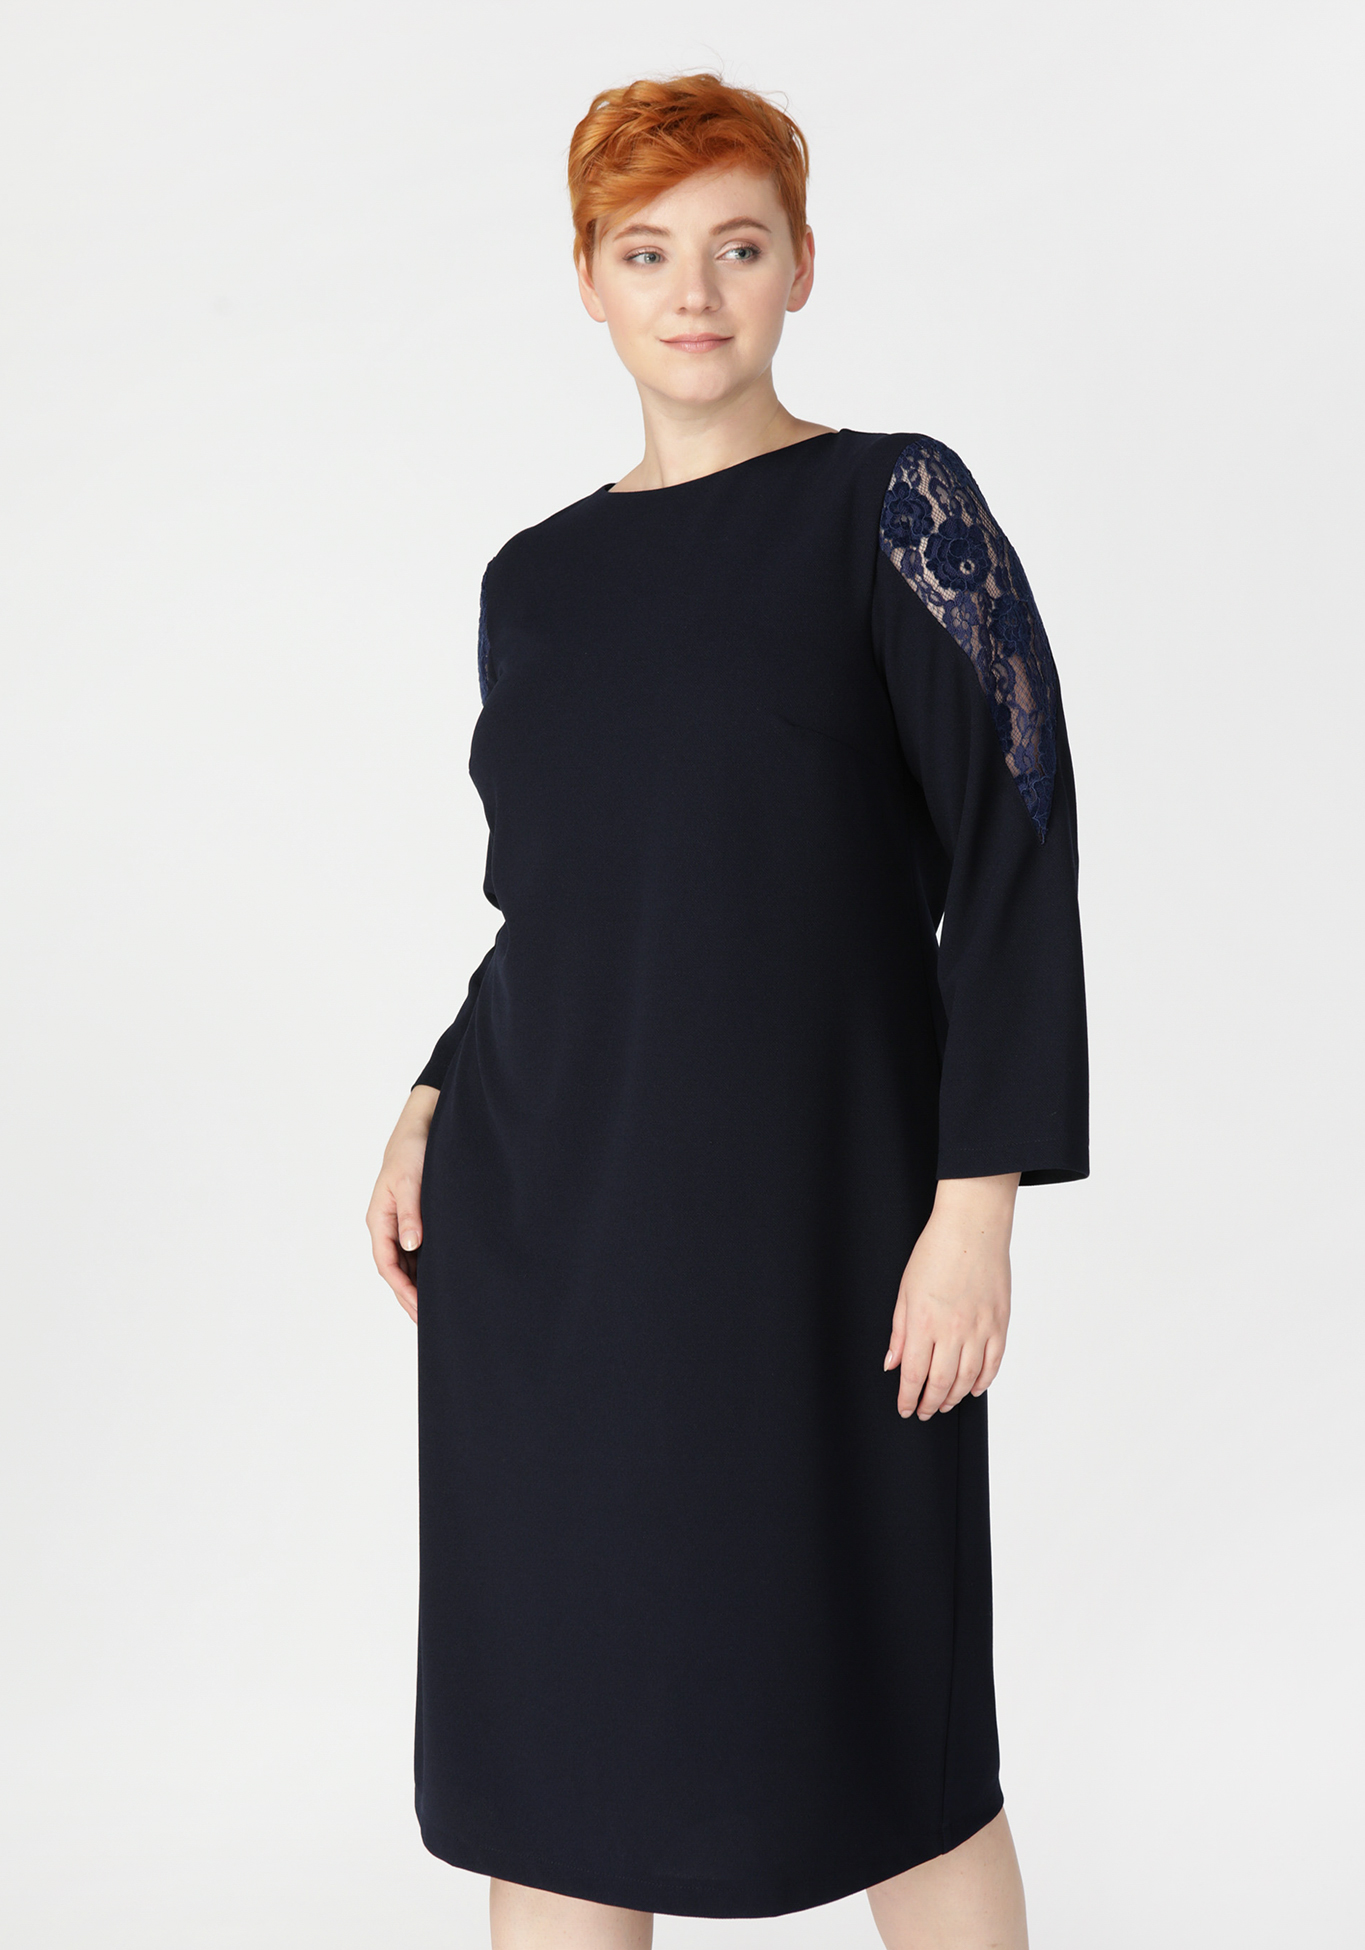 Платье «Огненный взгляд» Bianka Modeno, размер 50, цвет синий - фото 2